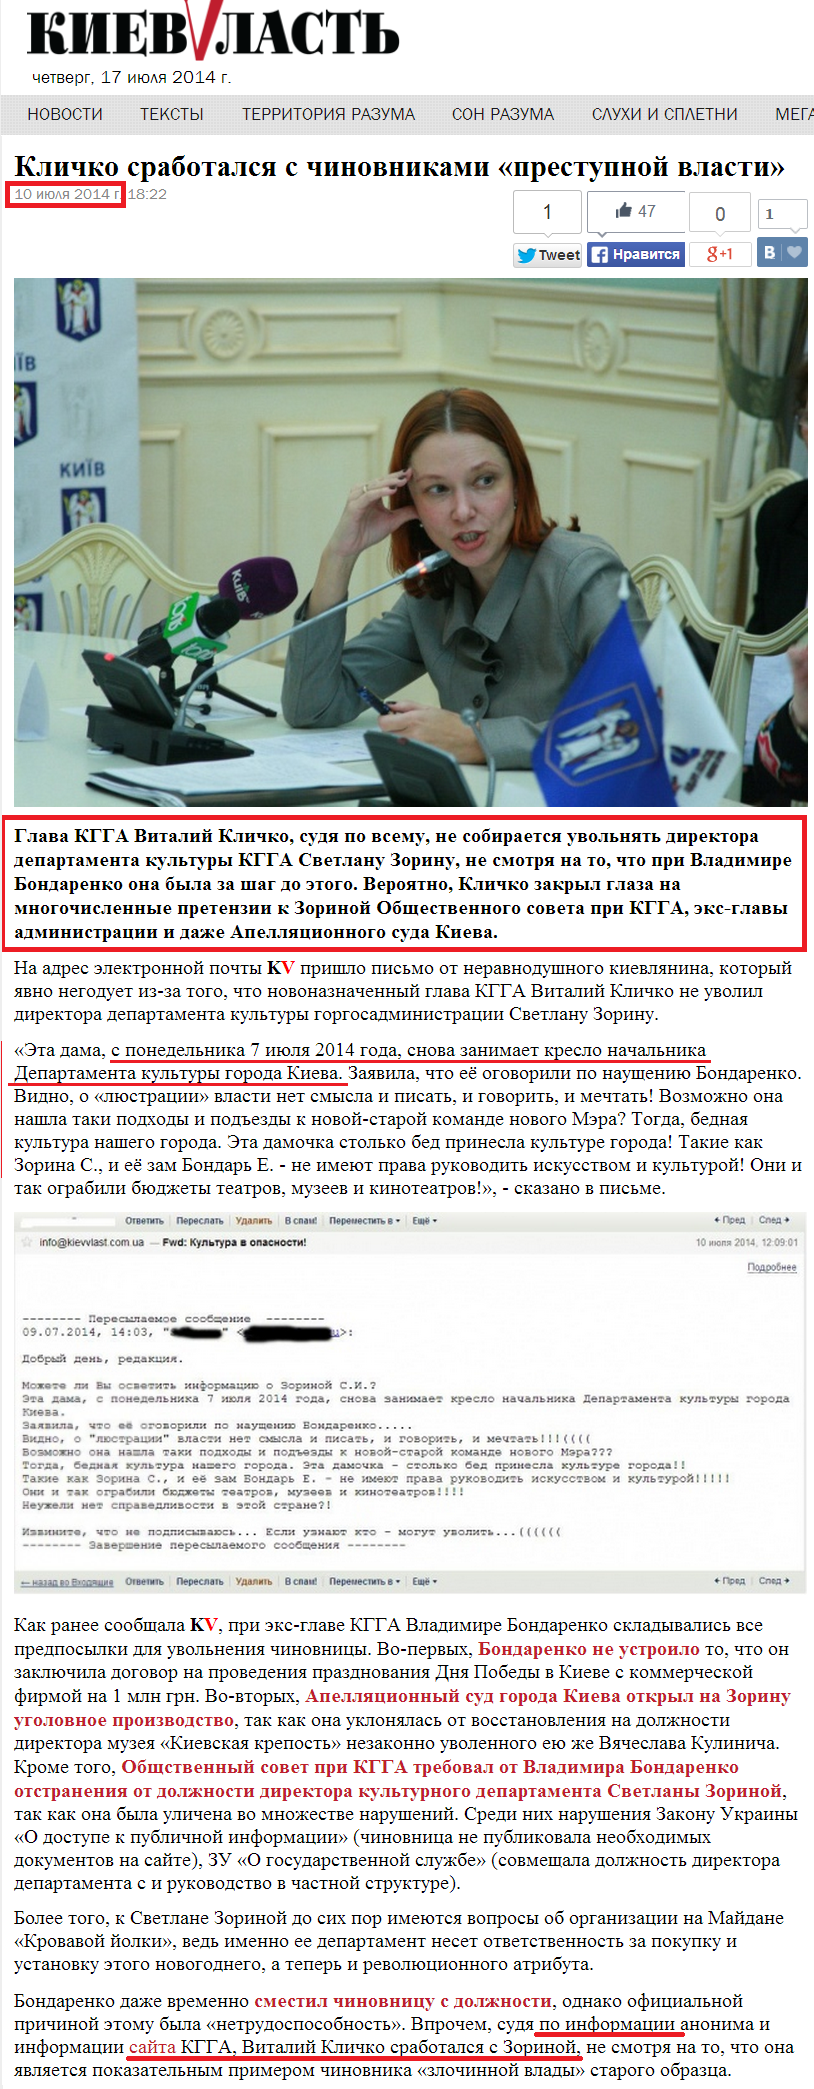 http://kievvlast.com.ua/gossip/klichko_srabotalsja_s_chinovnikami_prestupnoj_vlasti.html